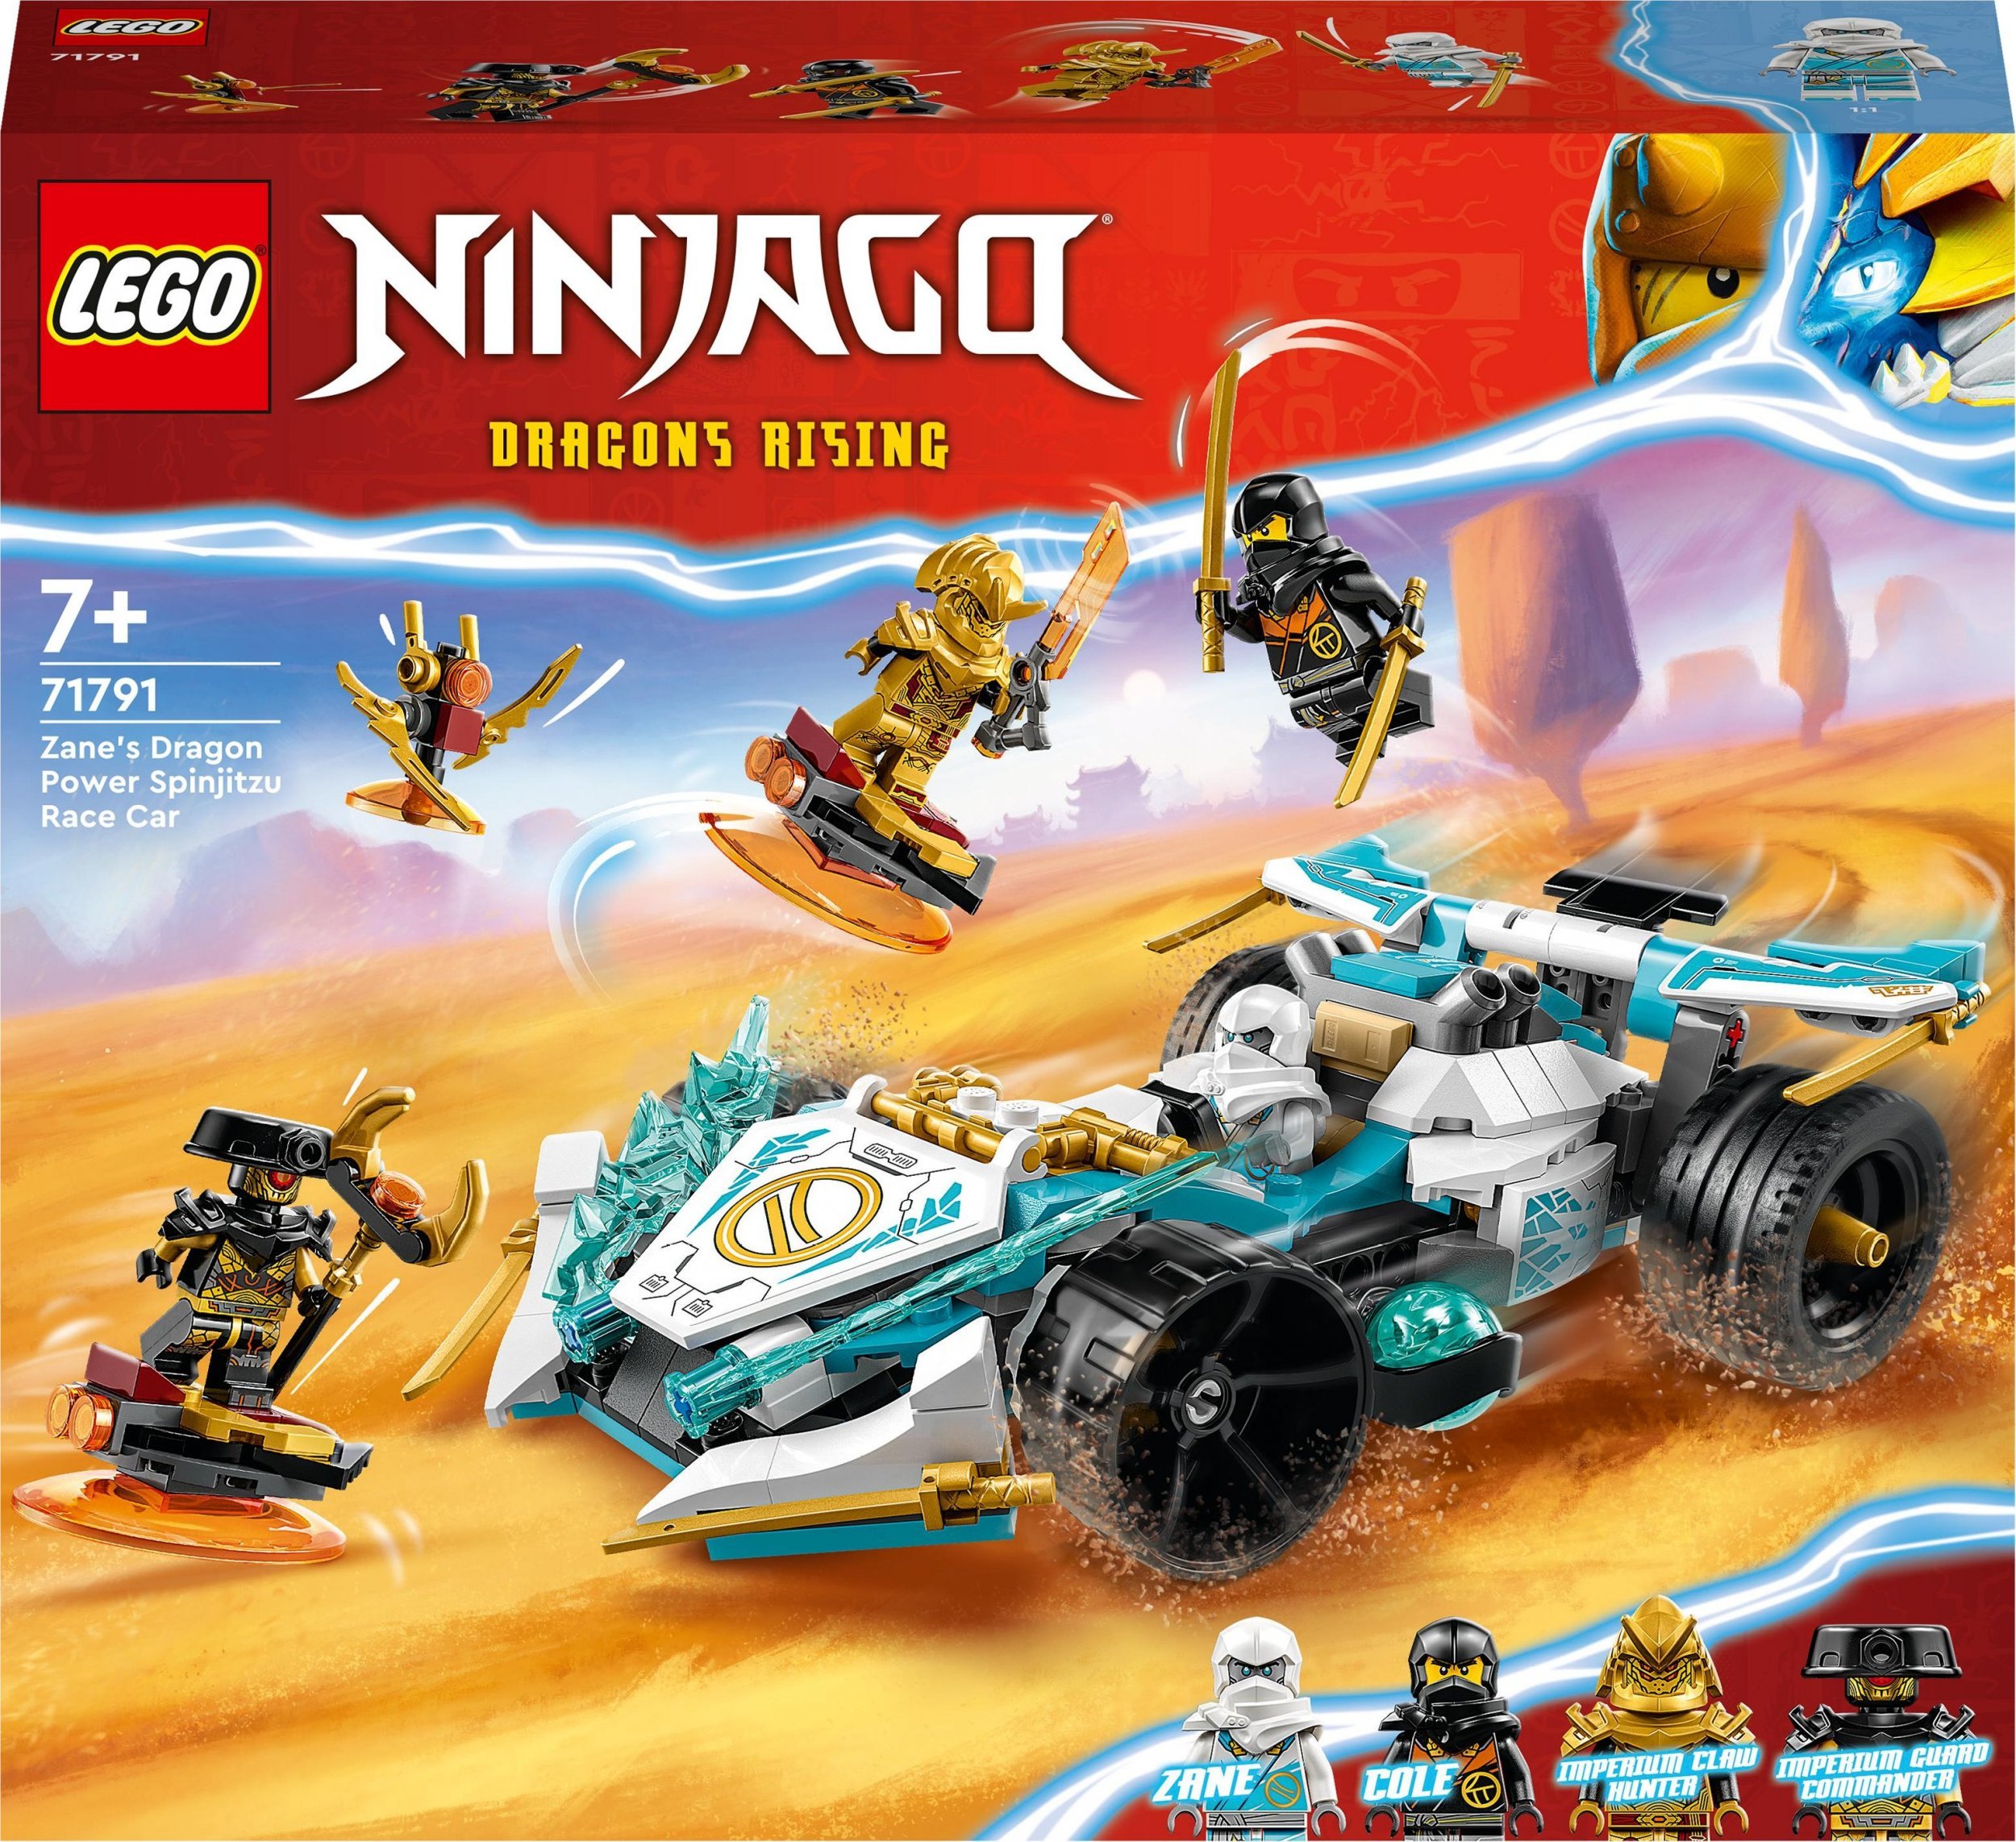 LEGO Ninjago Puterea dragonului lui Zane Racer Spinjitzu (71791)